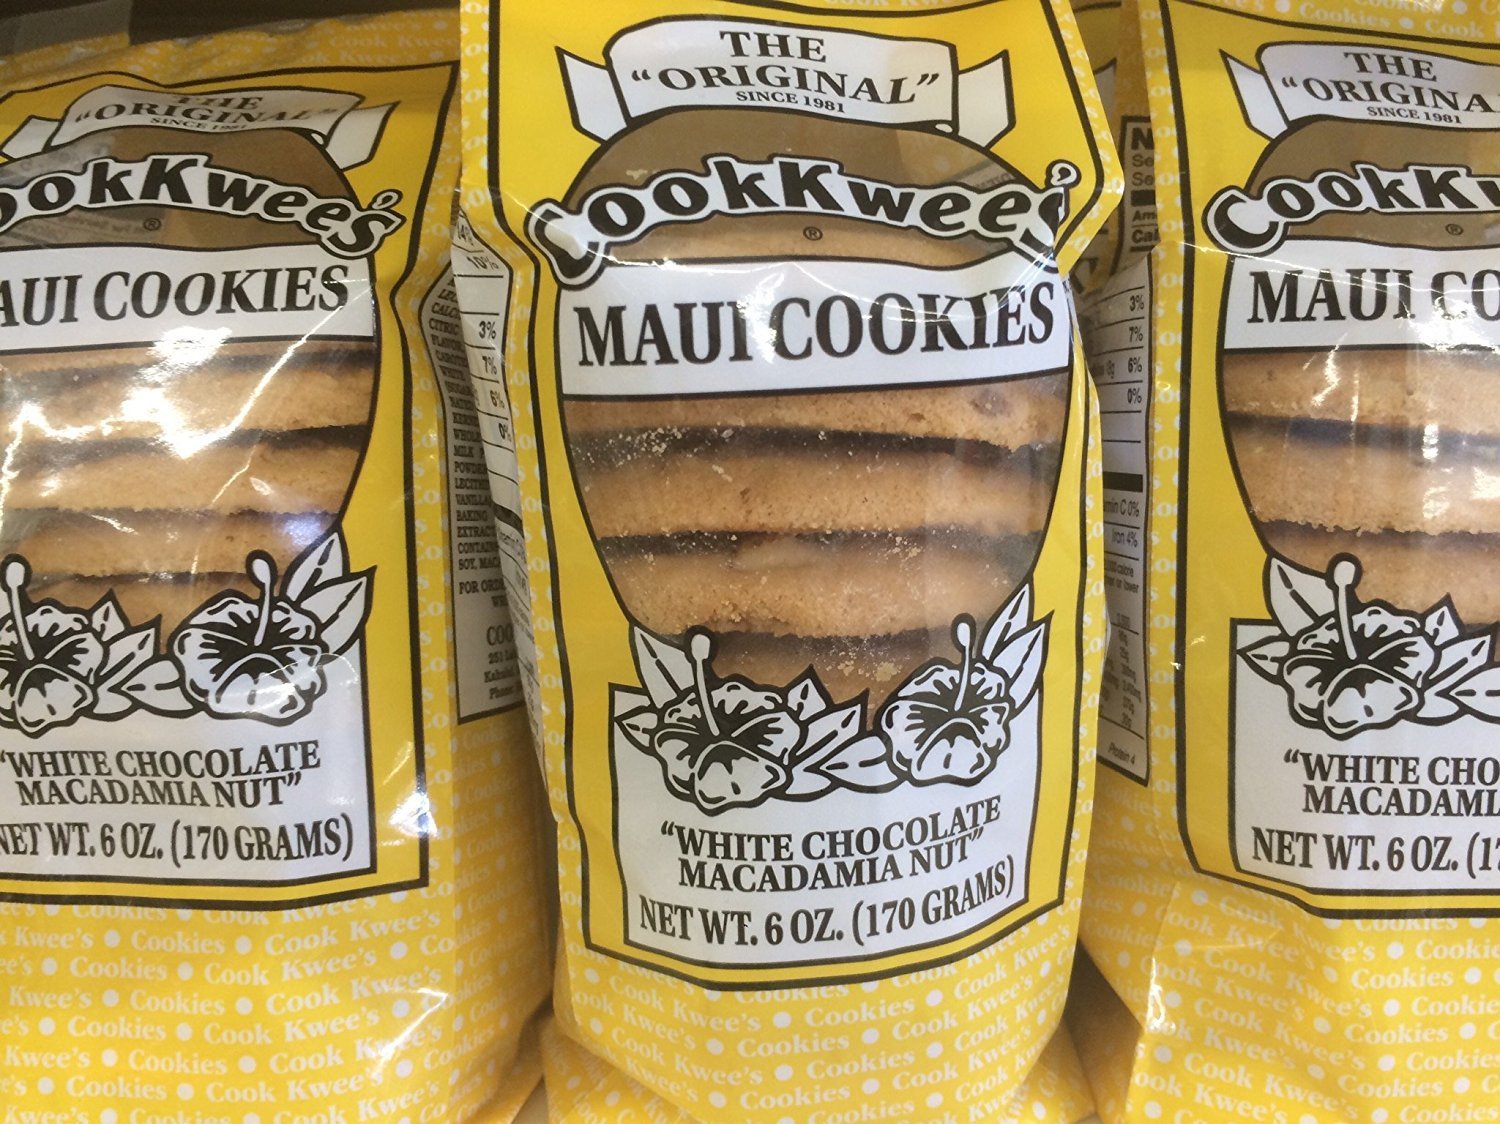 The Original Maui CookKwees Hawaii Cookies 3 Pack Set - 6 oz. Each